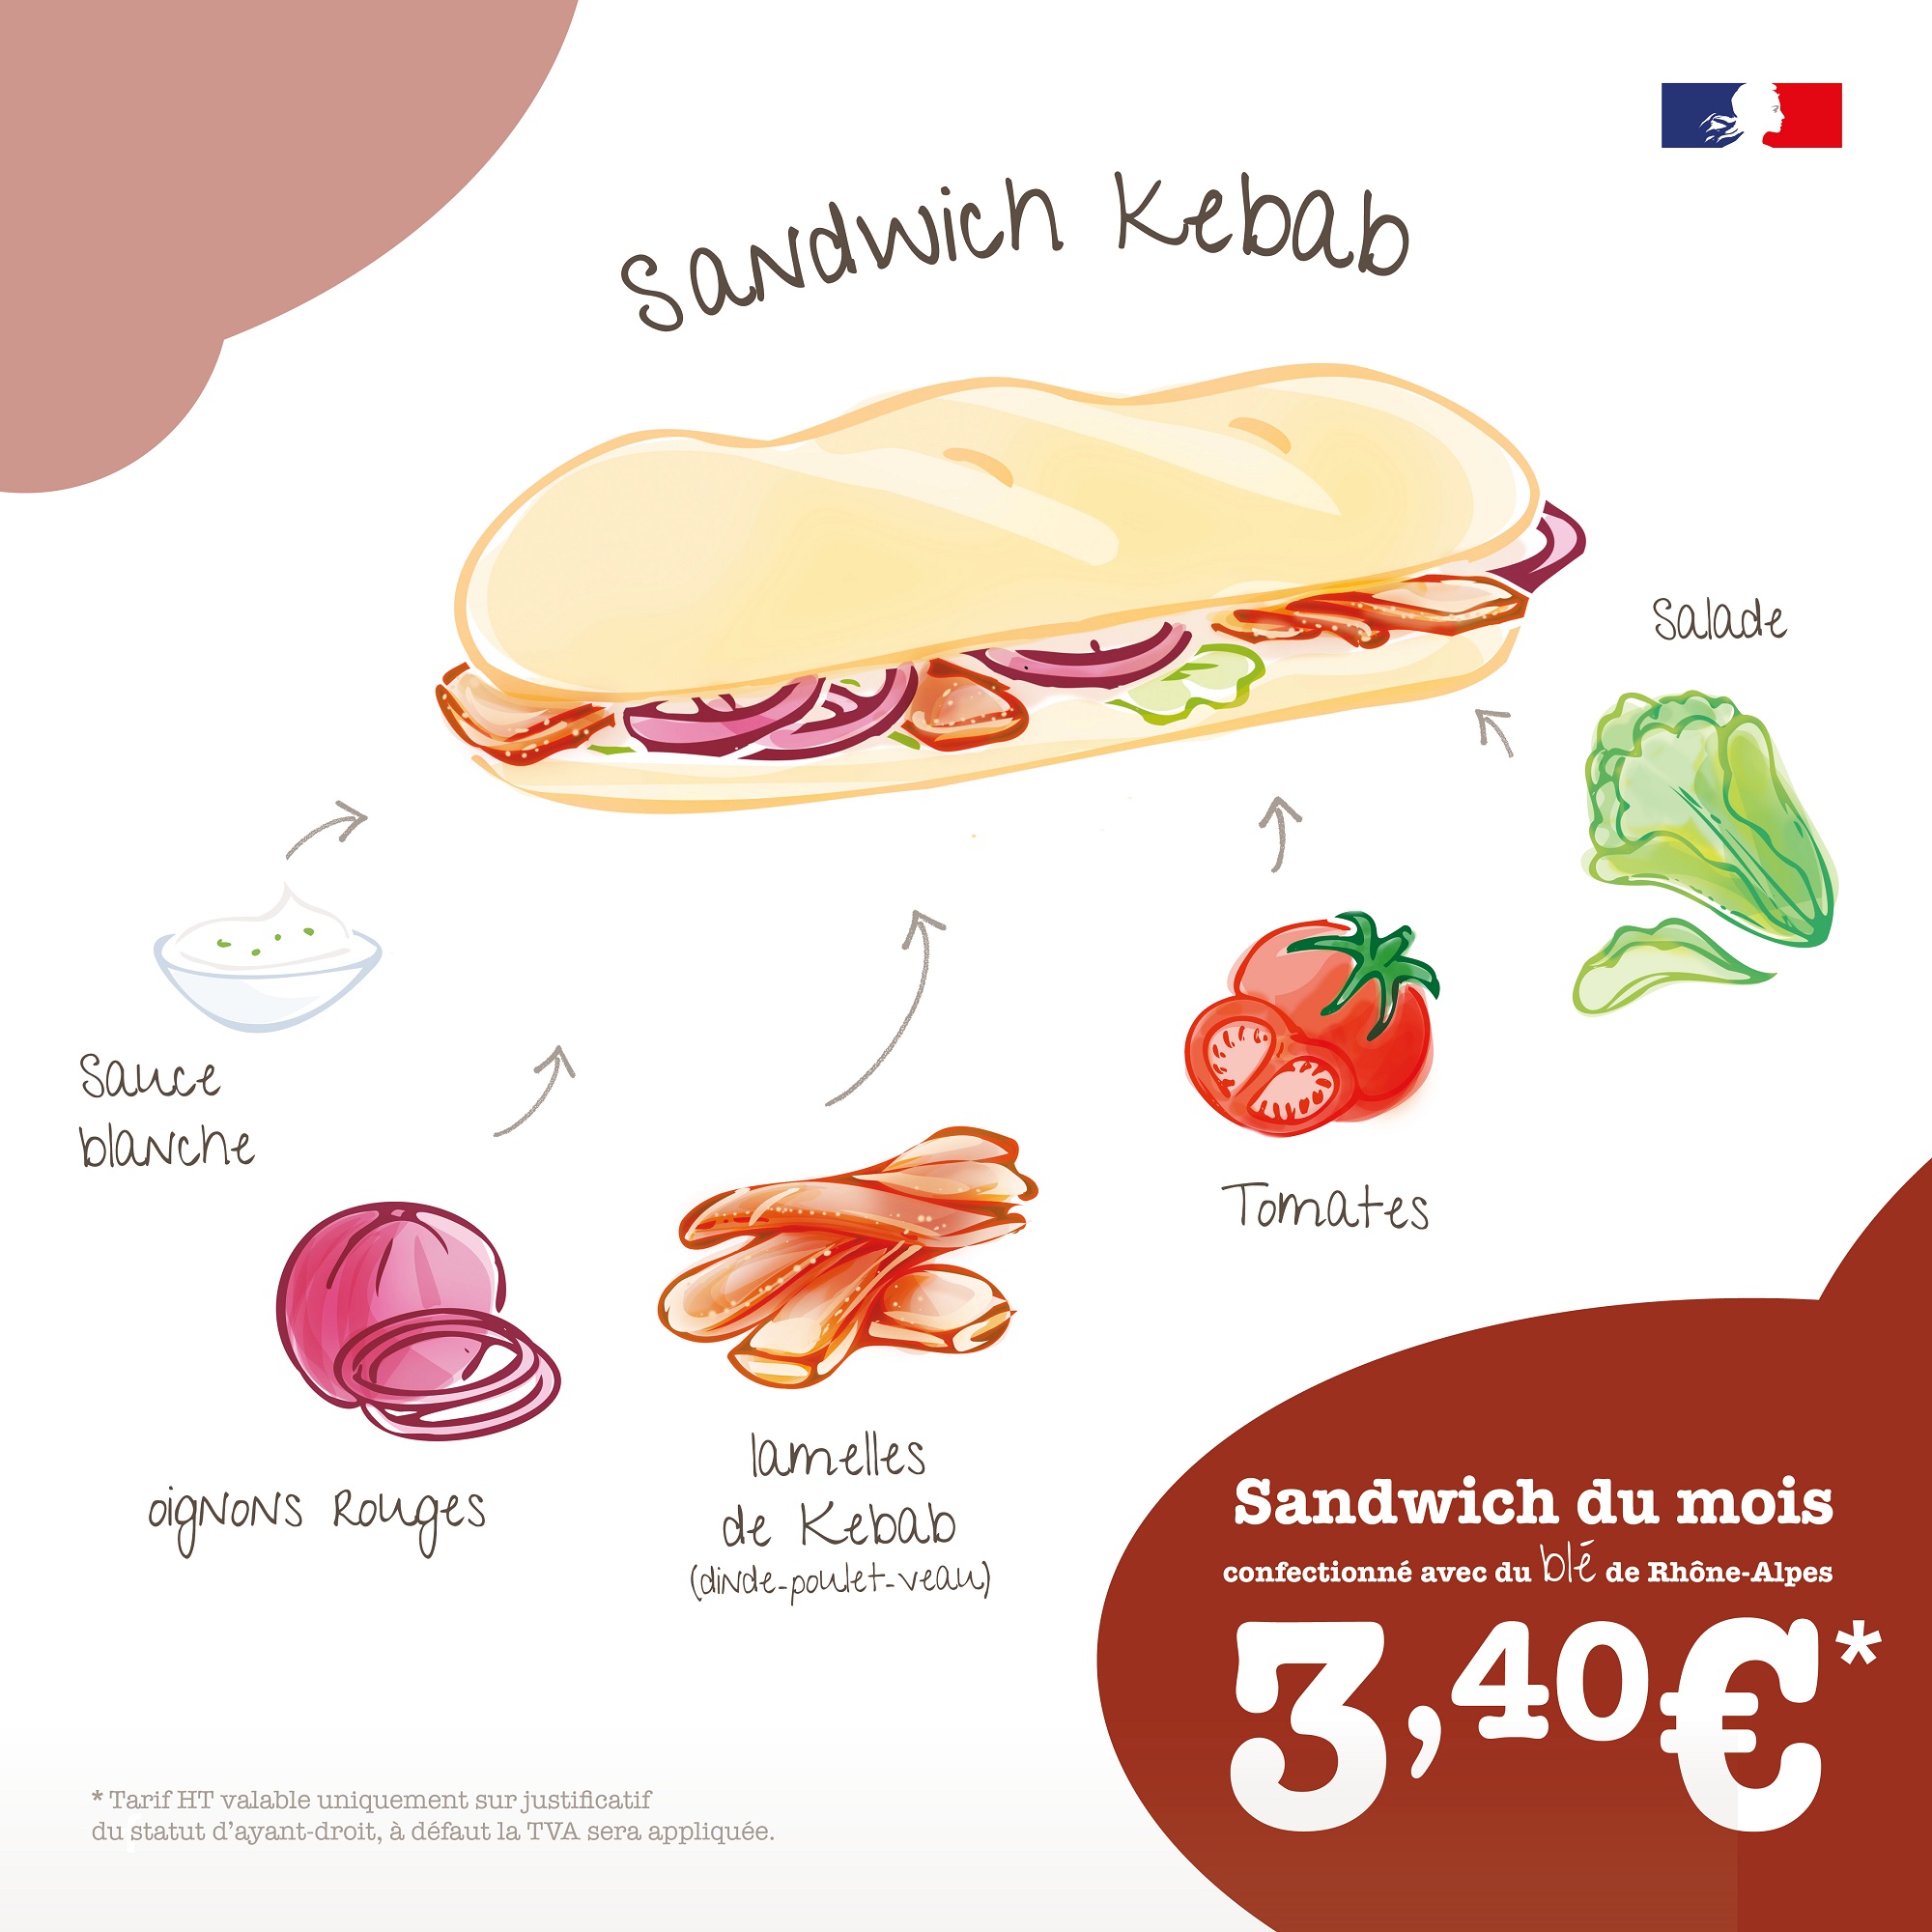 Sandwich Kebab Reseaux 1080x1080 3